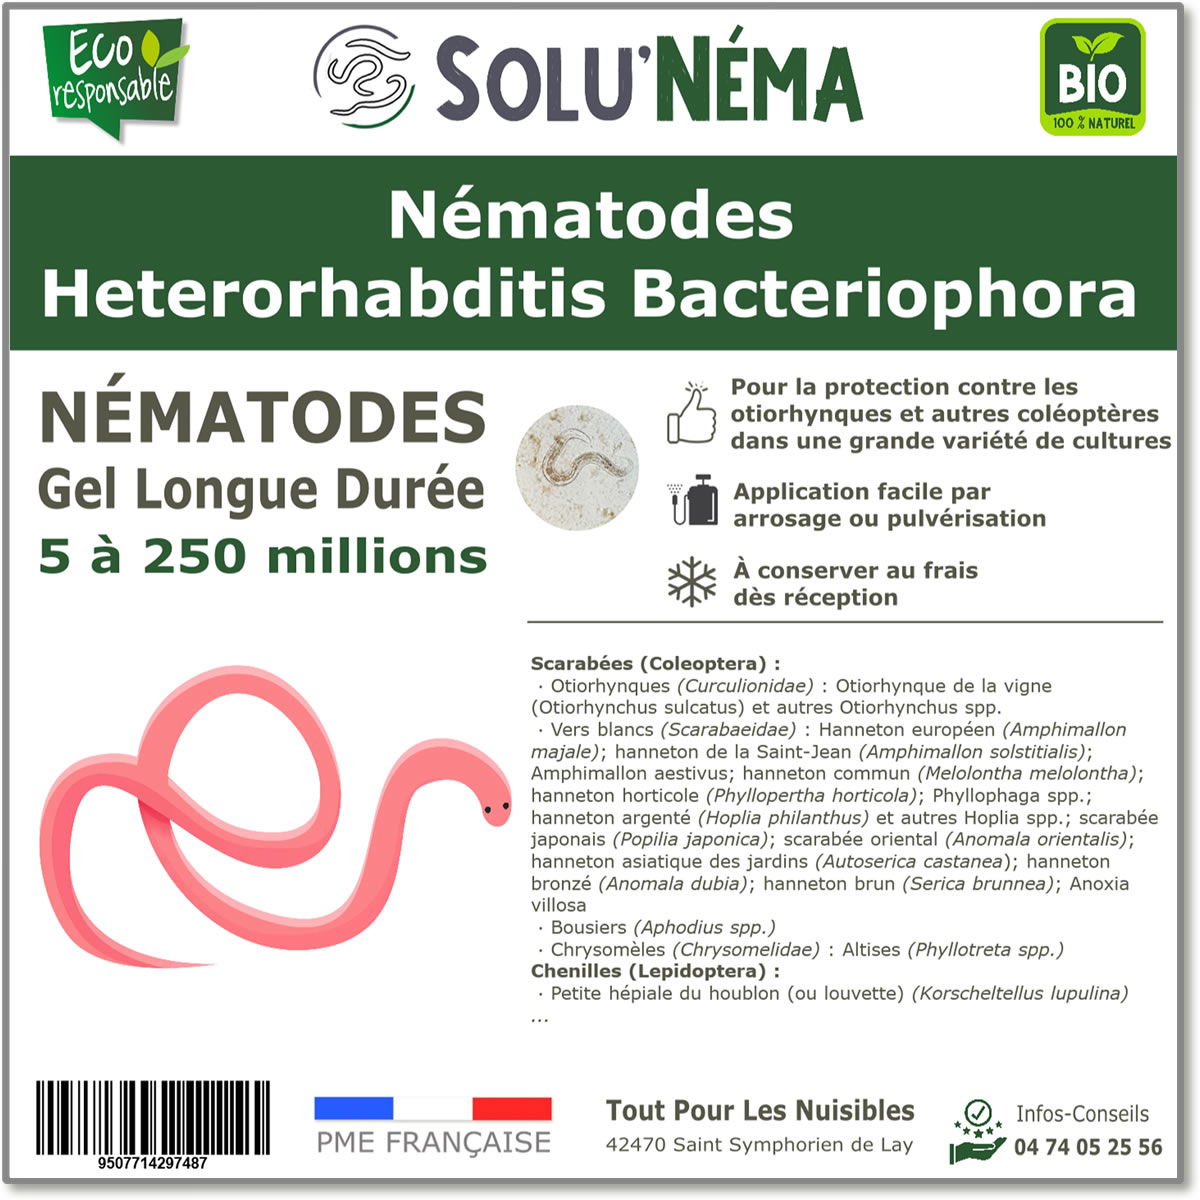 SOLUNEMA - Nématodes Heterorhabditis Bacteriophora (HB)